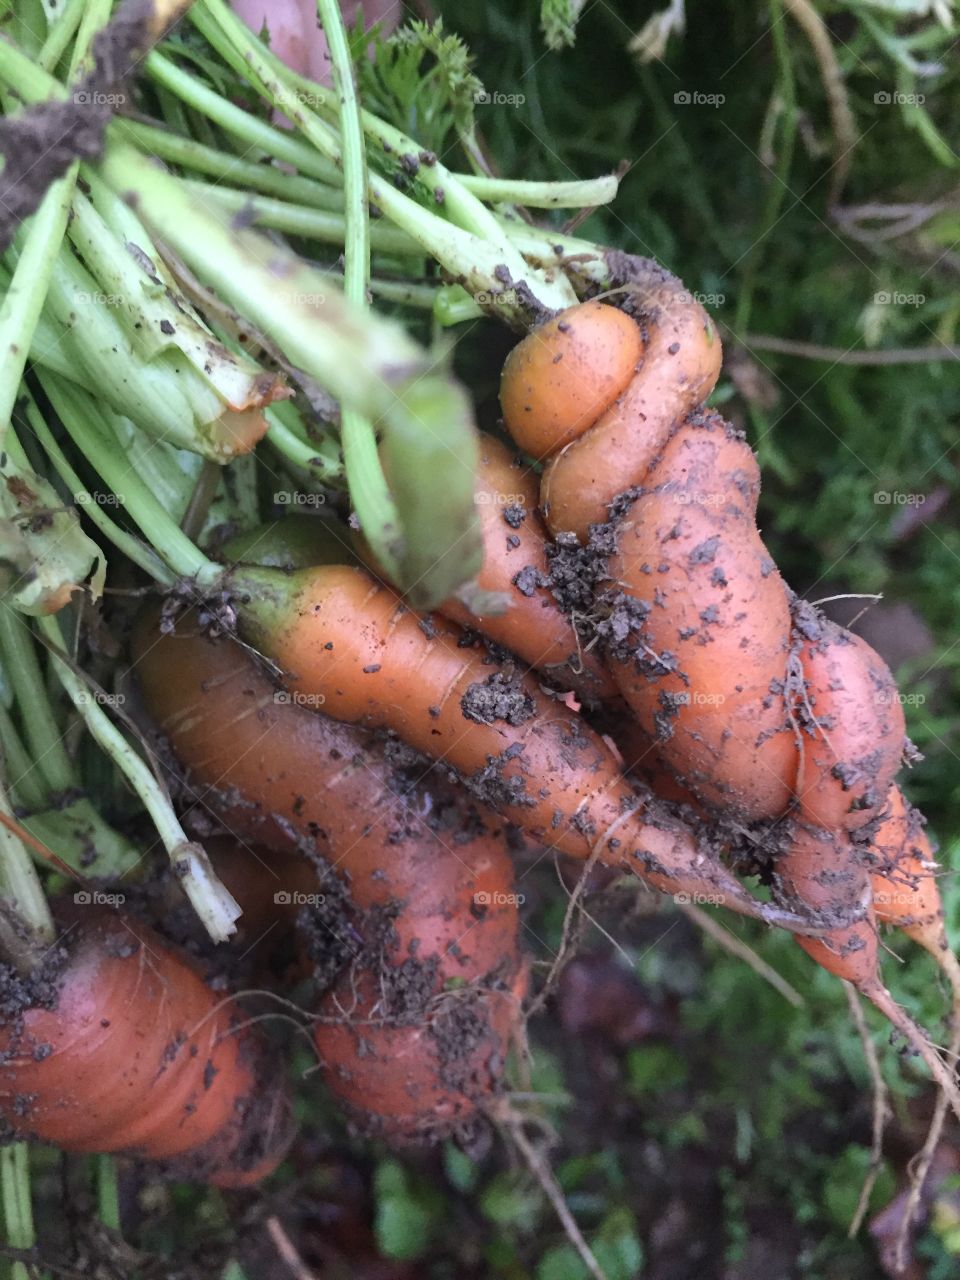 Fabulous crazy carrots